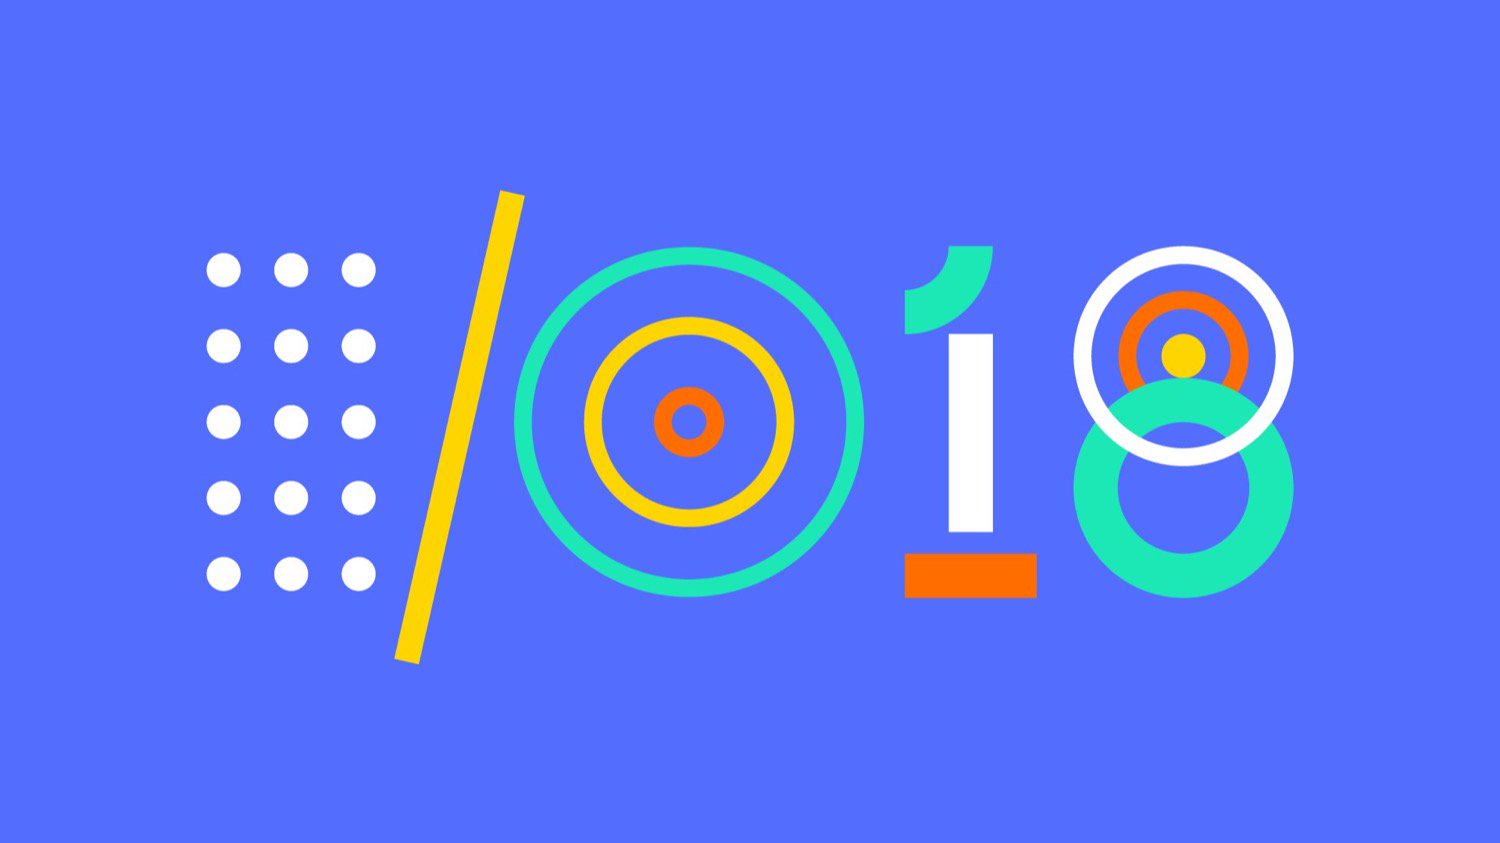 Résultats de Google I/O de 2018: Android P, Google Lens et bien plus encore